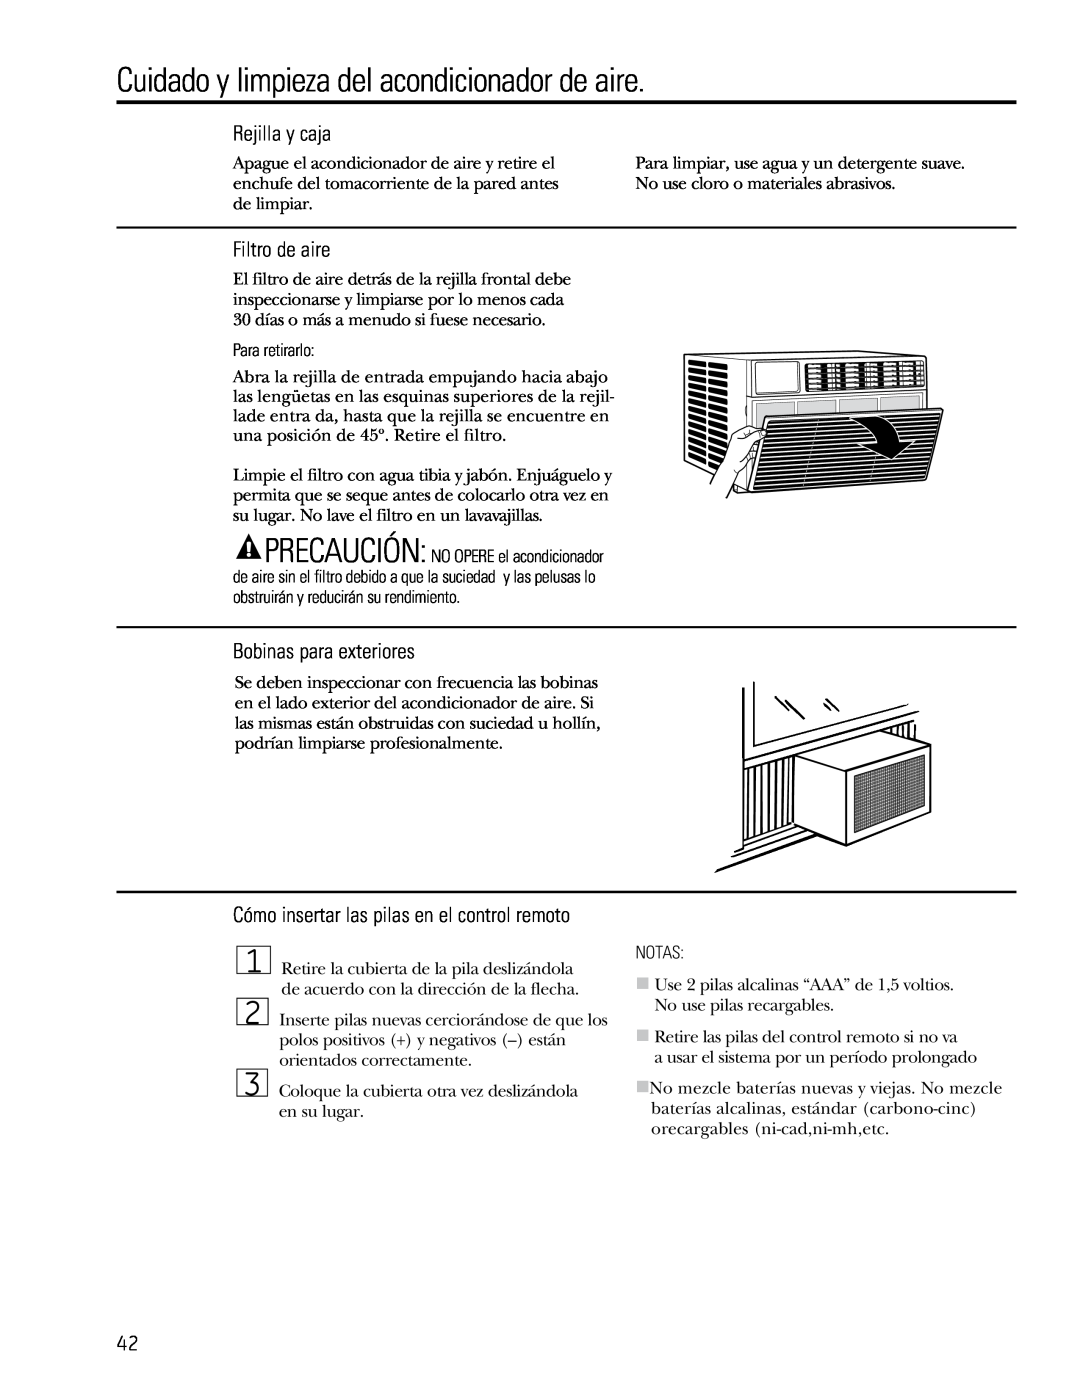 GE 880 Cuidado y limpieza del acondicionador de aire, Rejilla y caja, Filtro de aire, Bobinas para exteriores 